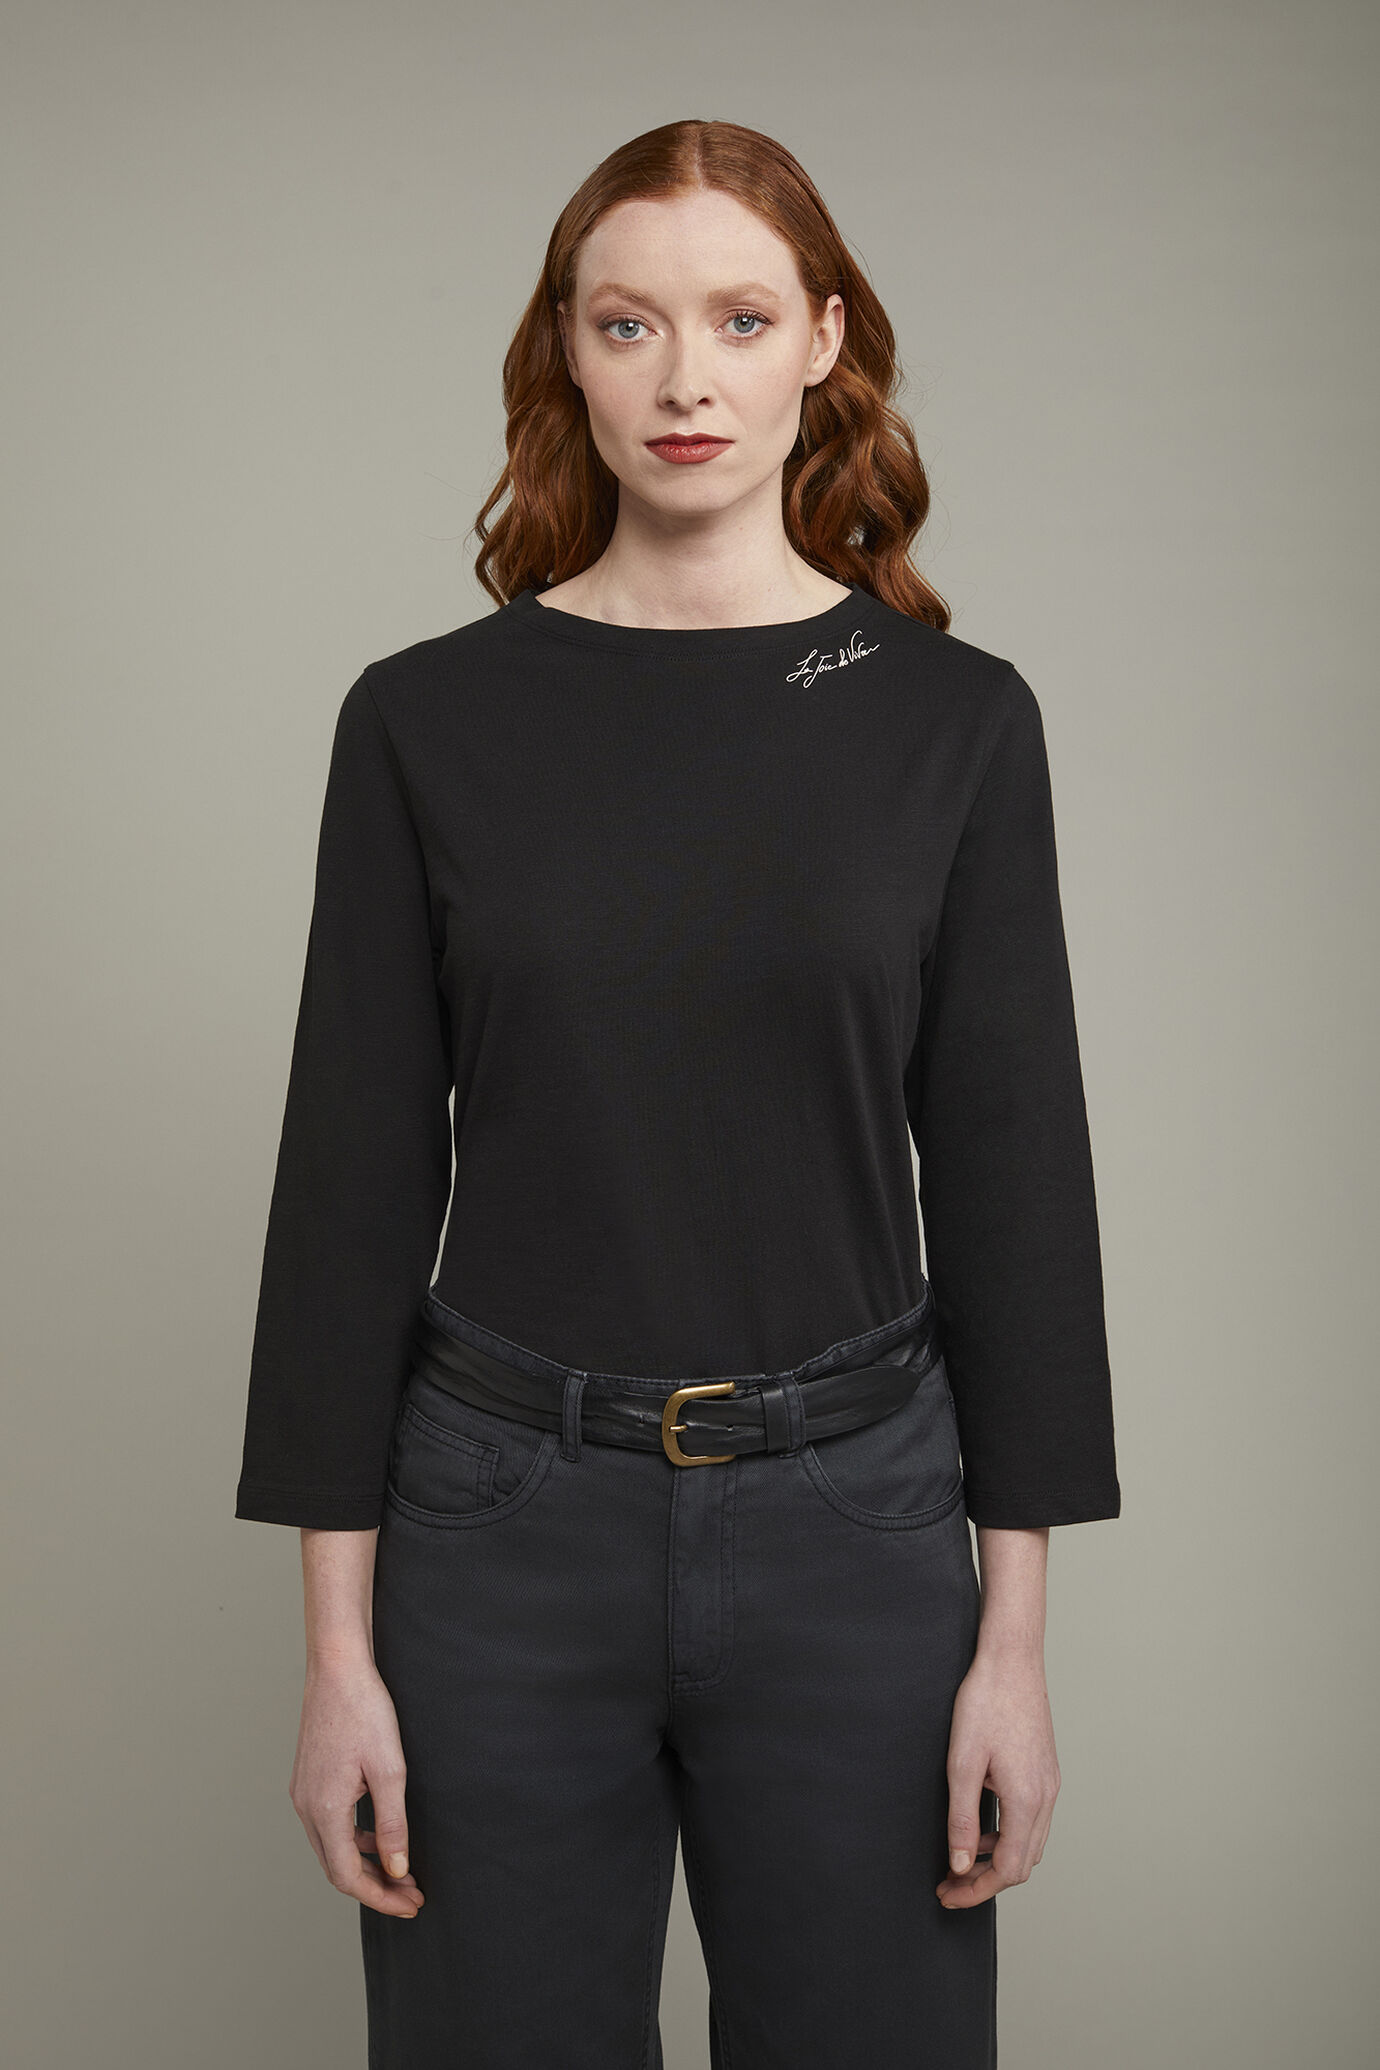 Women’s v-neck t-shirt 100% cotton regular fit image number 2